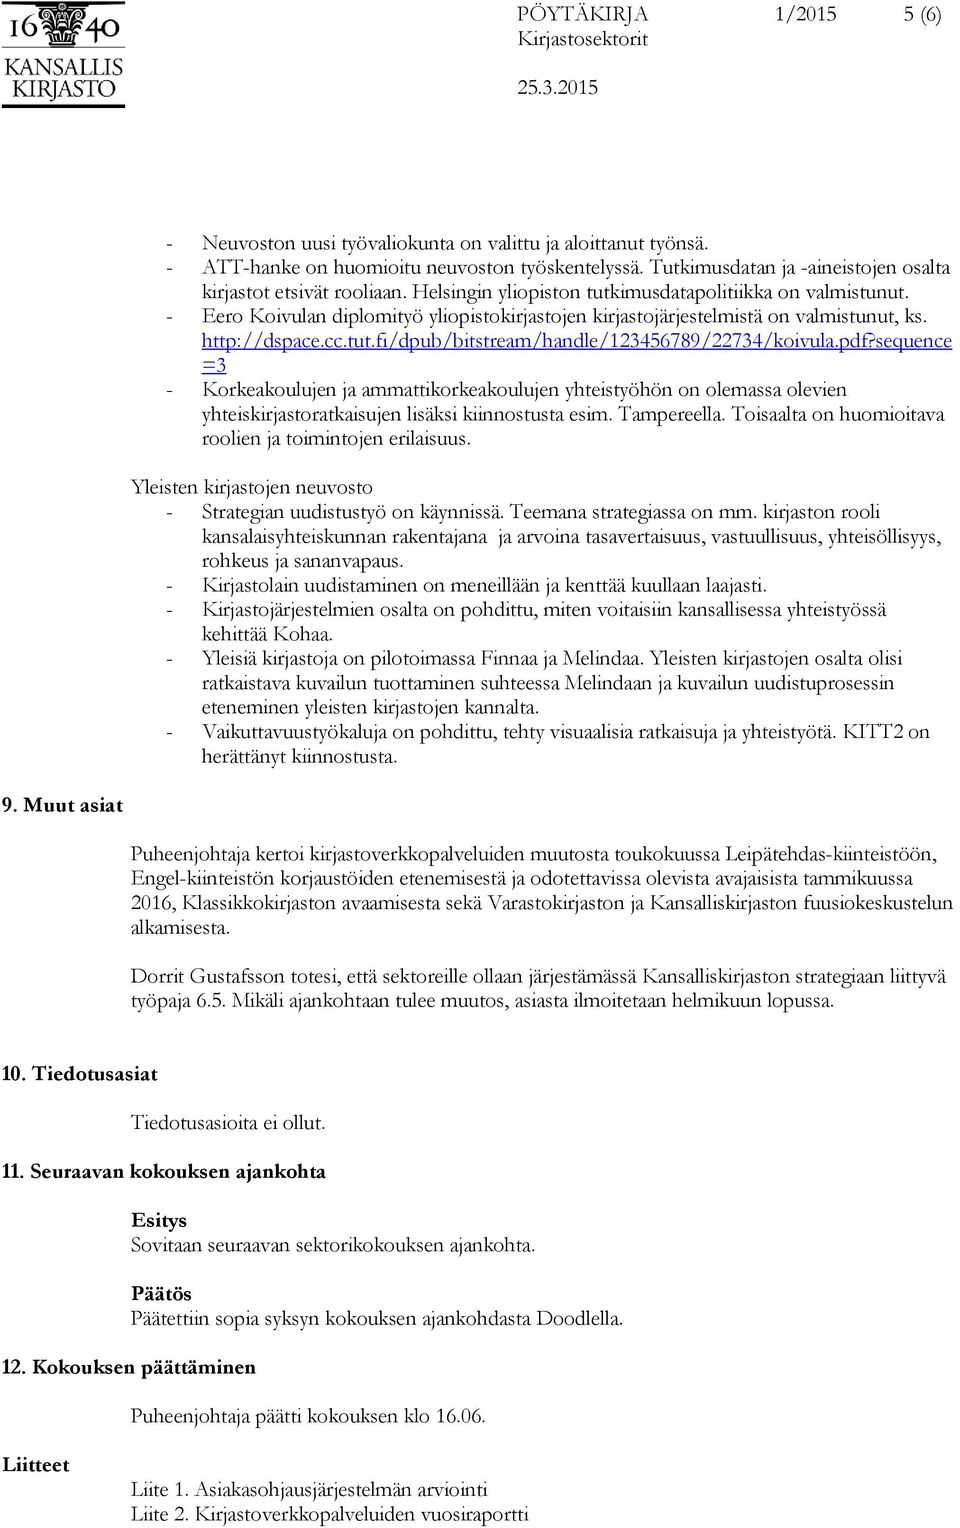 - Eero Koivulan diplomityö yliopistokirjastojen kirjastojärjestelmistä on valmistunut, ks. http://dspace.cc.tut.fi/dpub/bitstream/handle/123456789/22734/koivula.pdf?